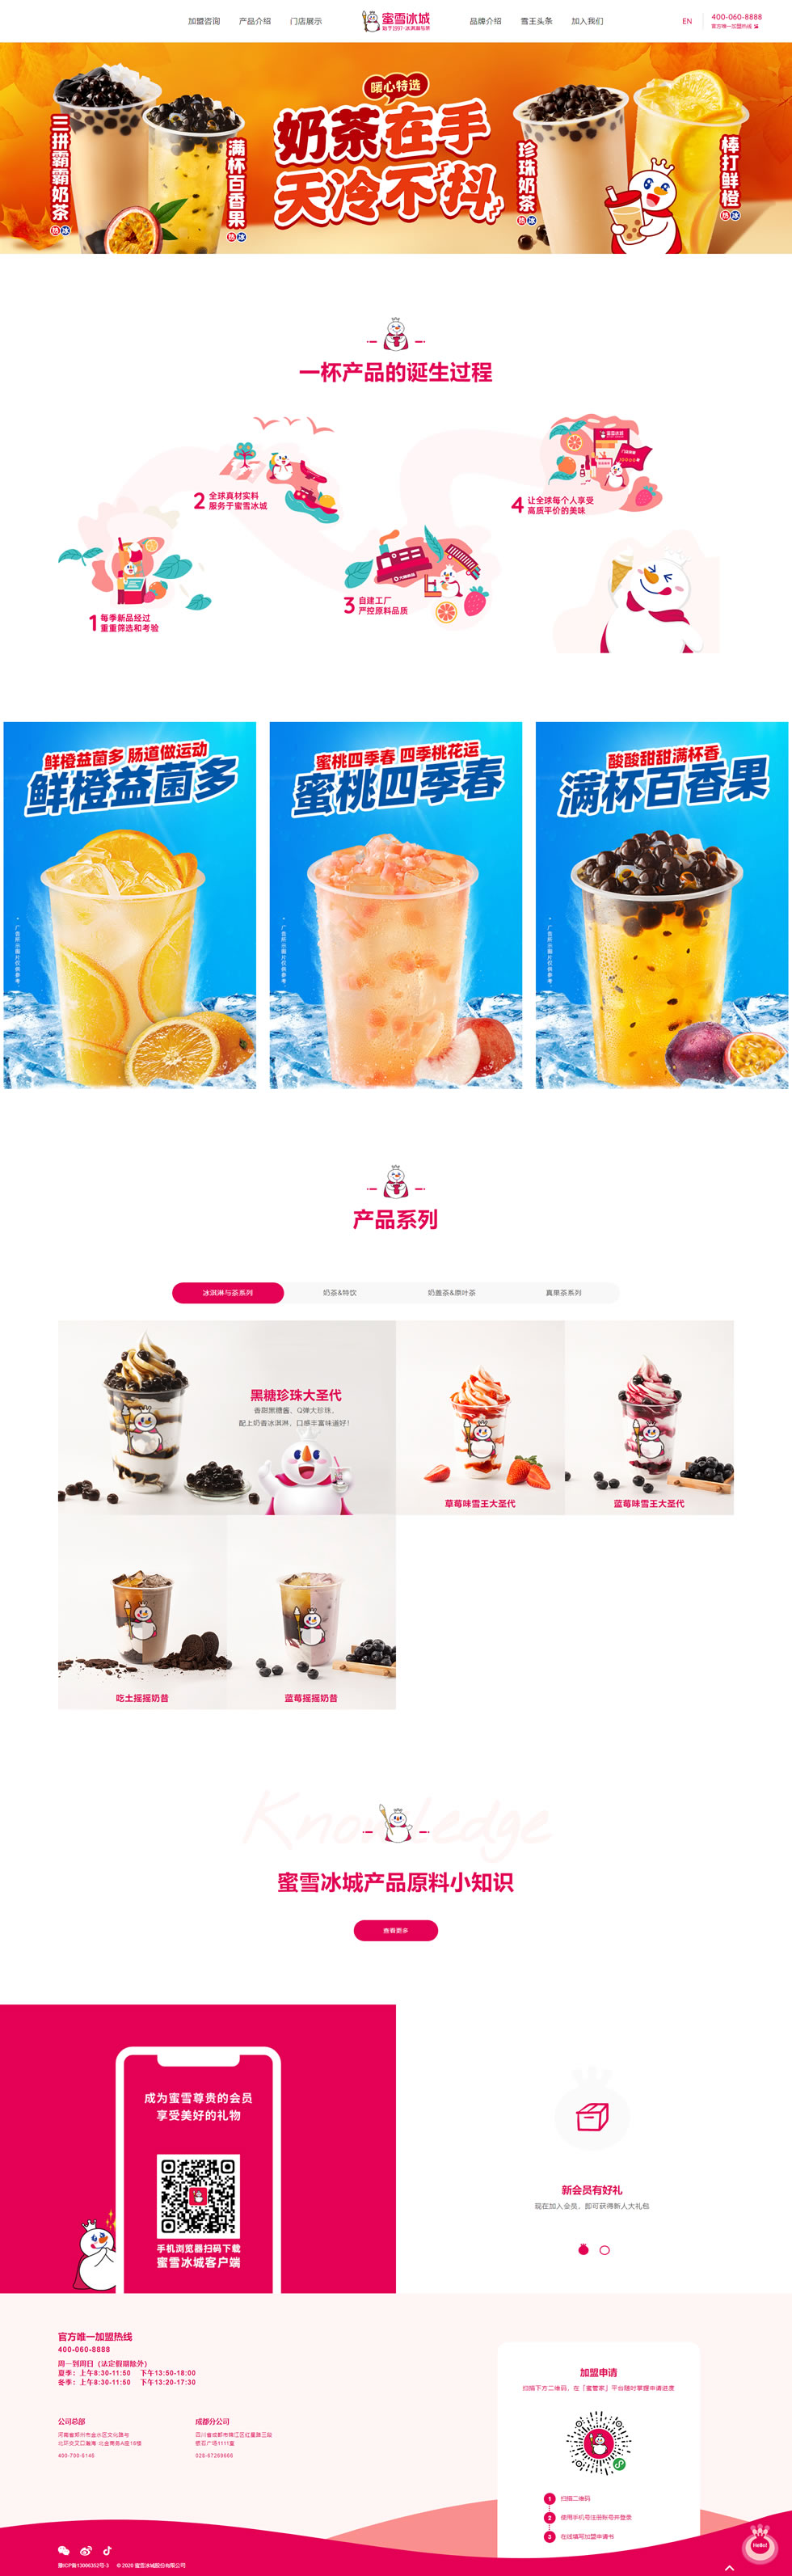 冷饮品牌网站设计